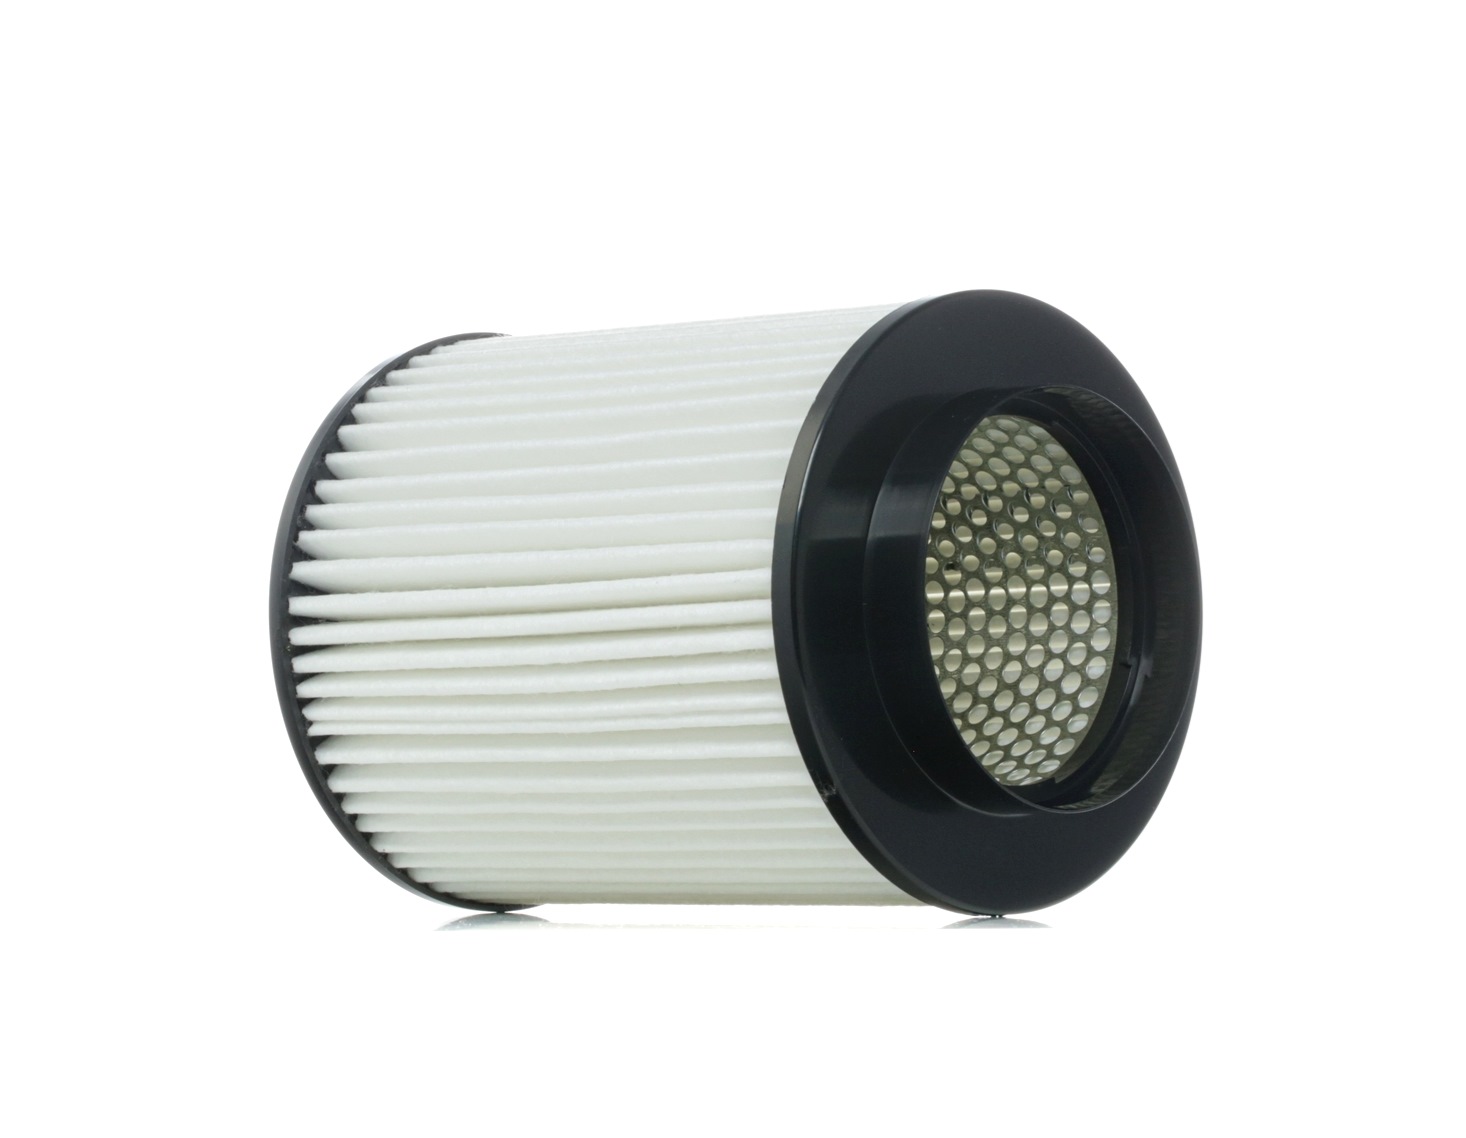 RIDEX 8A0682 Air filter 203mm, 152mm, Filter Insert, Air Recirculation Filter